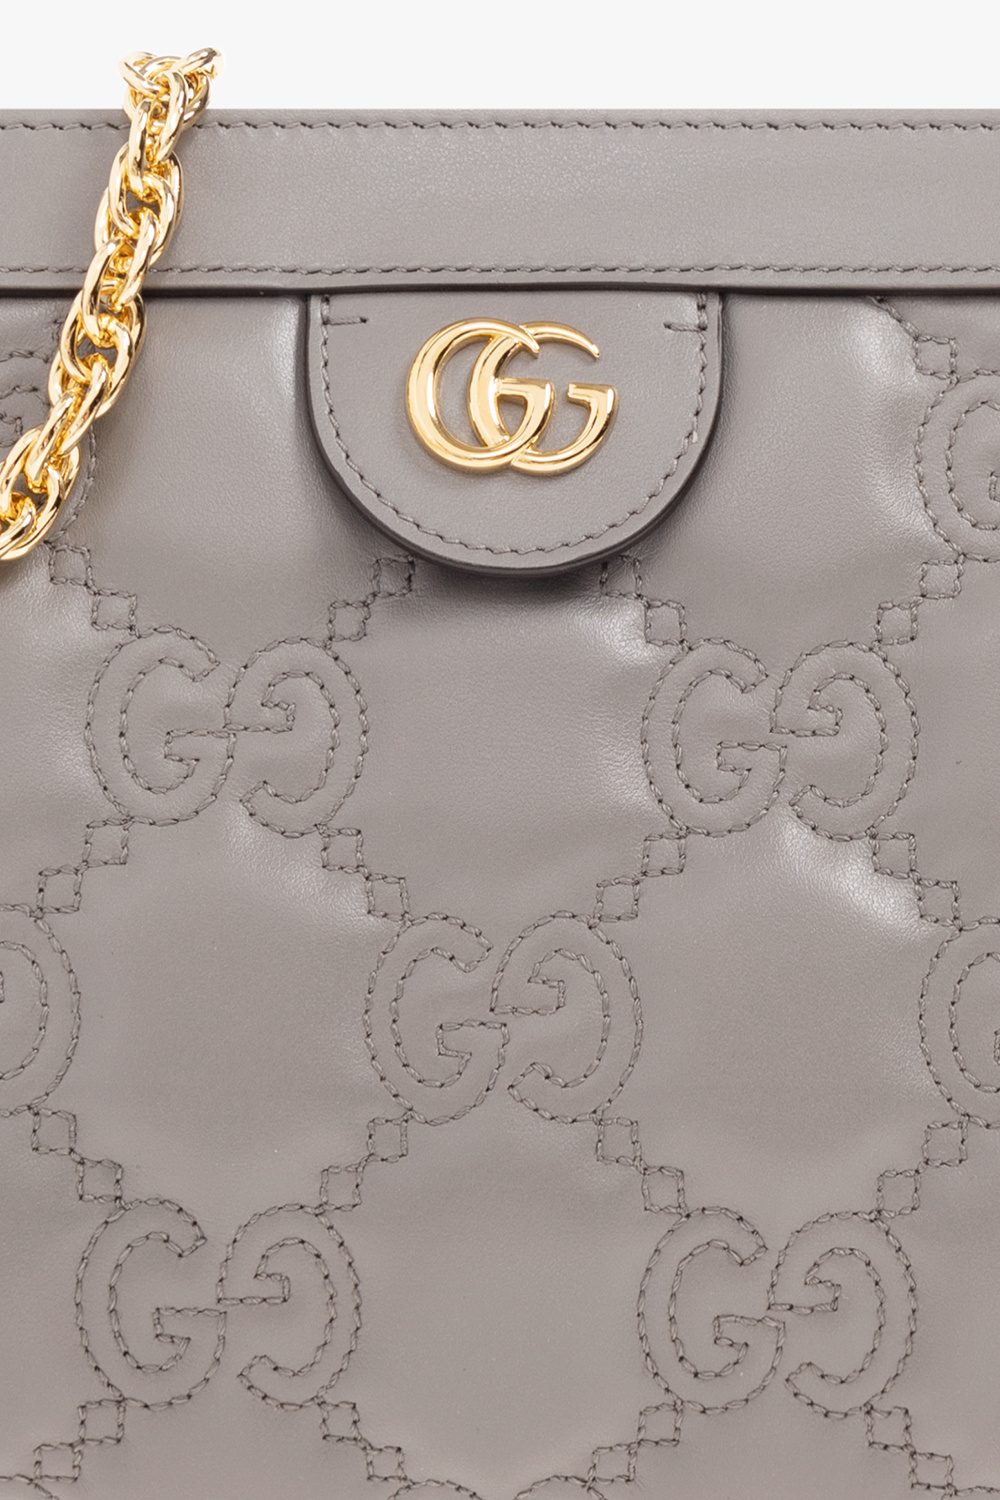 Gucci ‘GG Matelassé Small’ shoulder bag